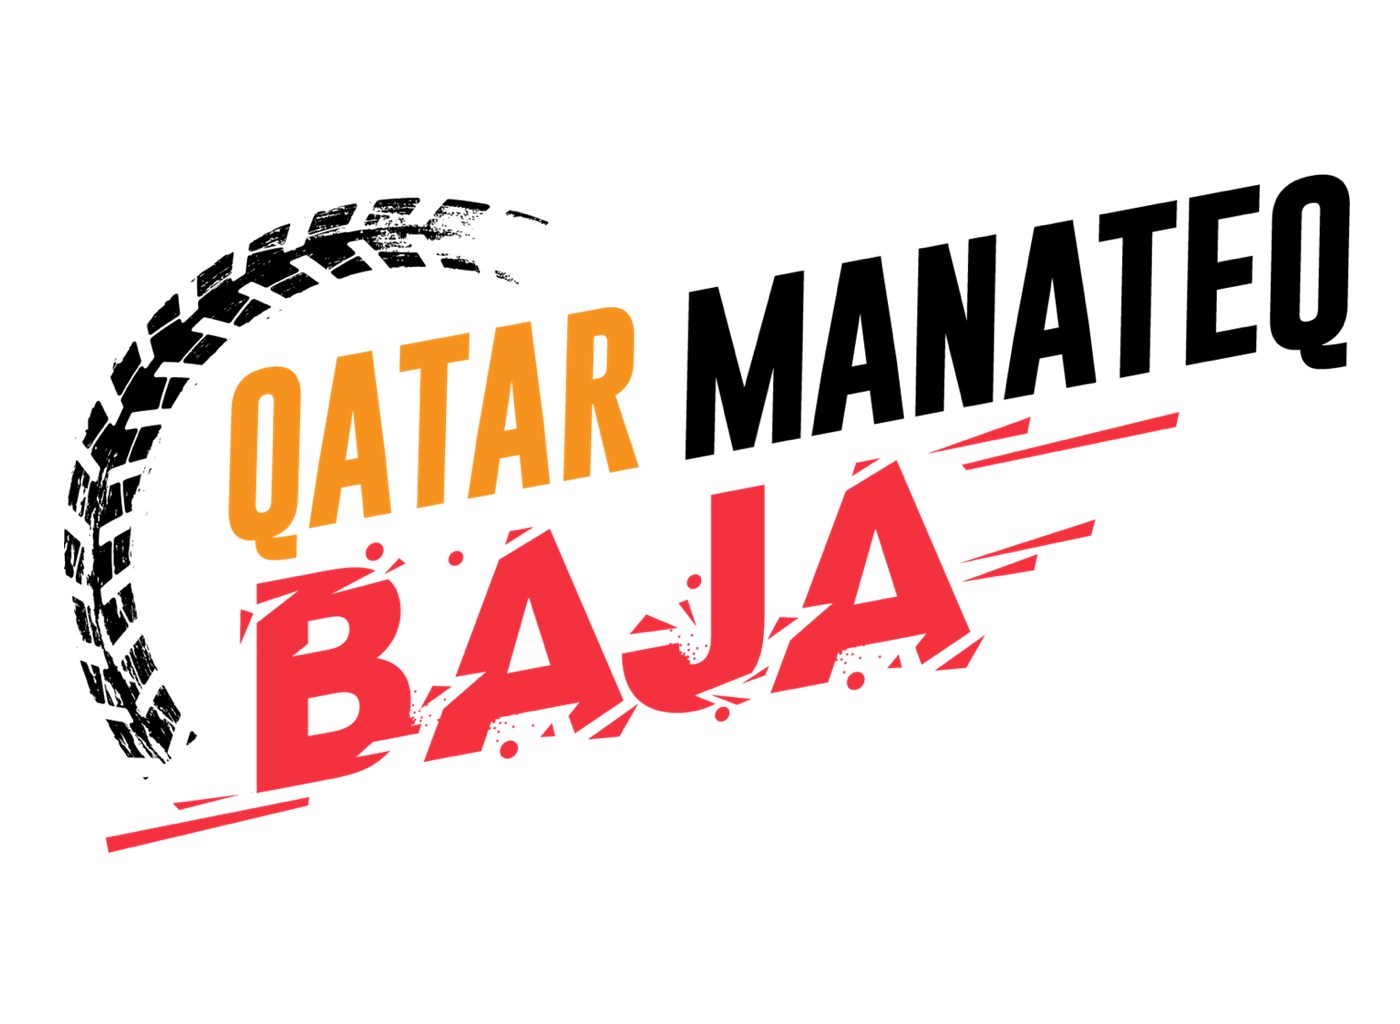 Baja Logo - Qatar Manateq Baja – QMMF